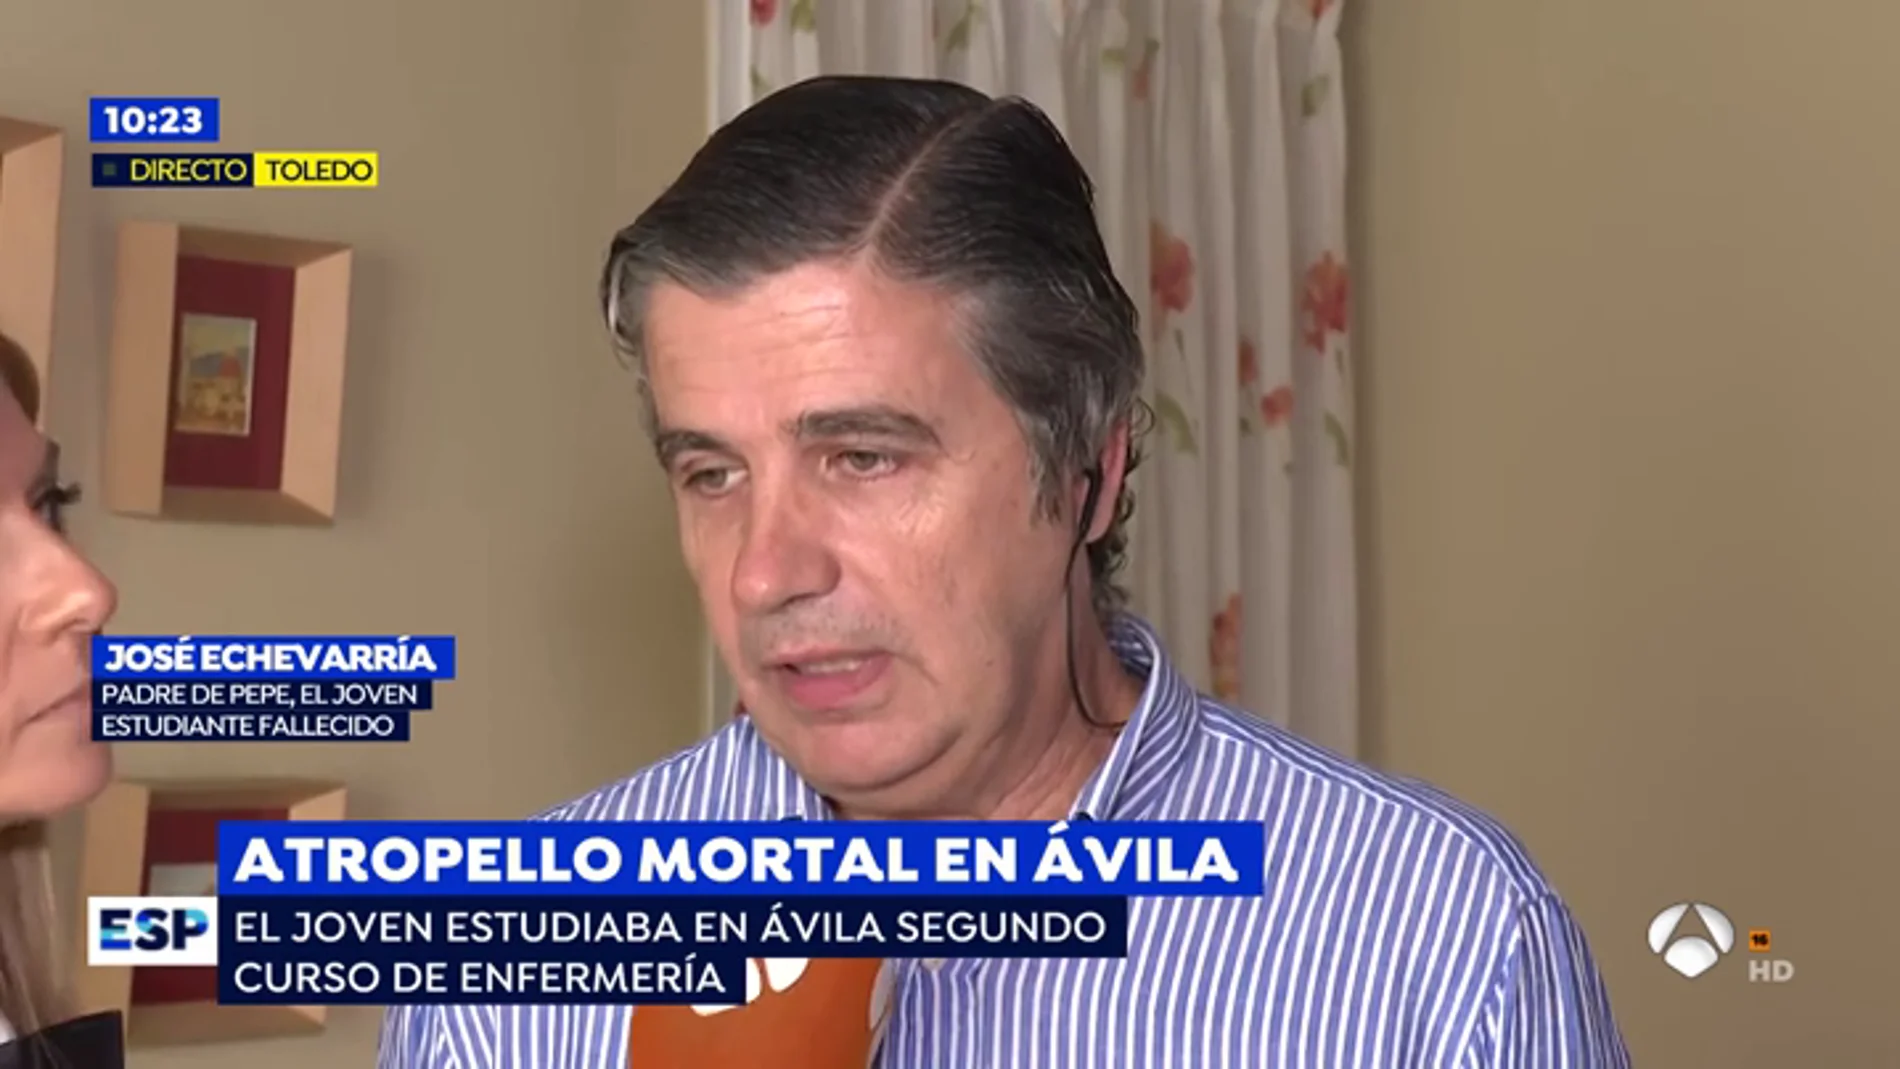 Atropello mortal en Ávila